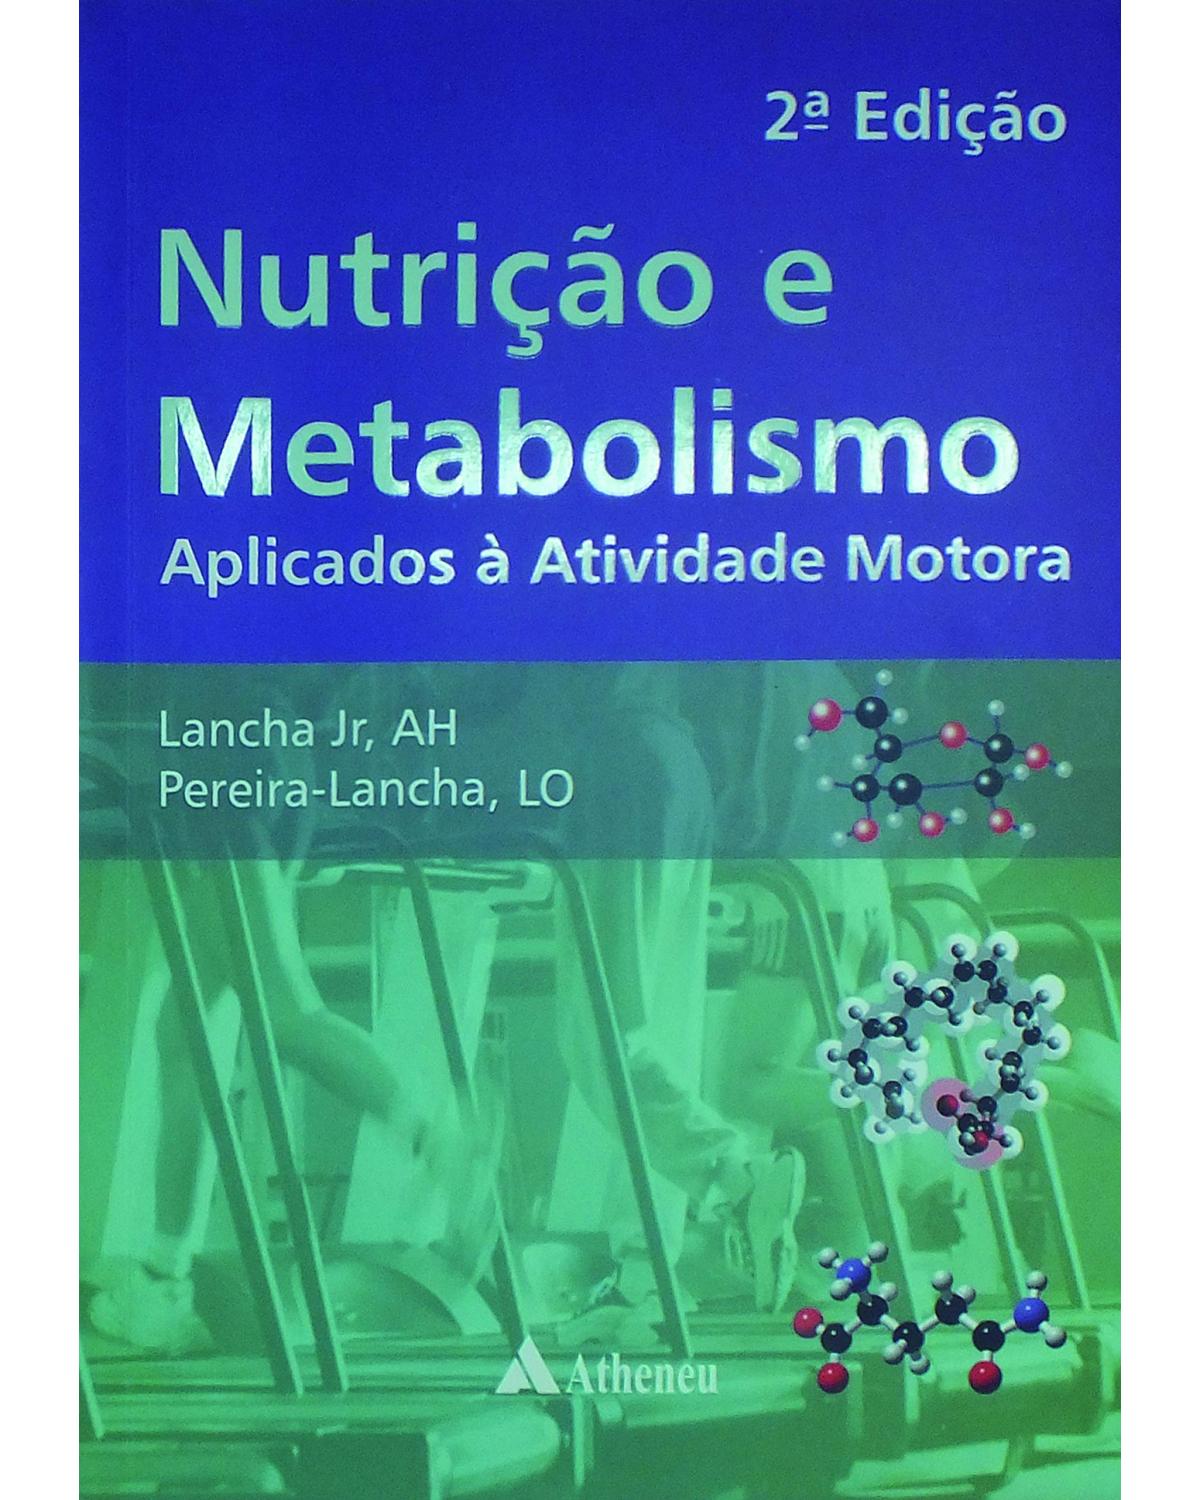 Nutrição e metabolismo - aplicados à atividade motora - 2ª Edição | 2012